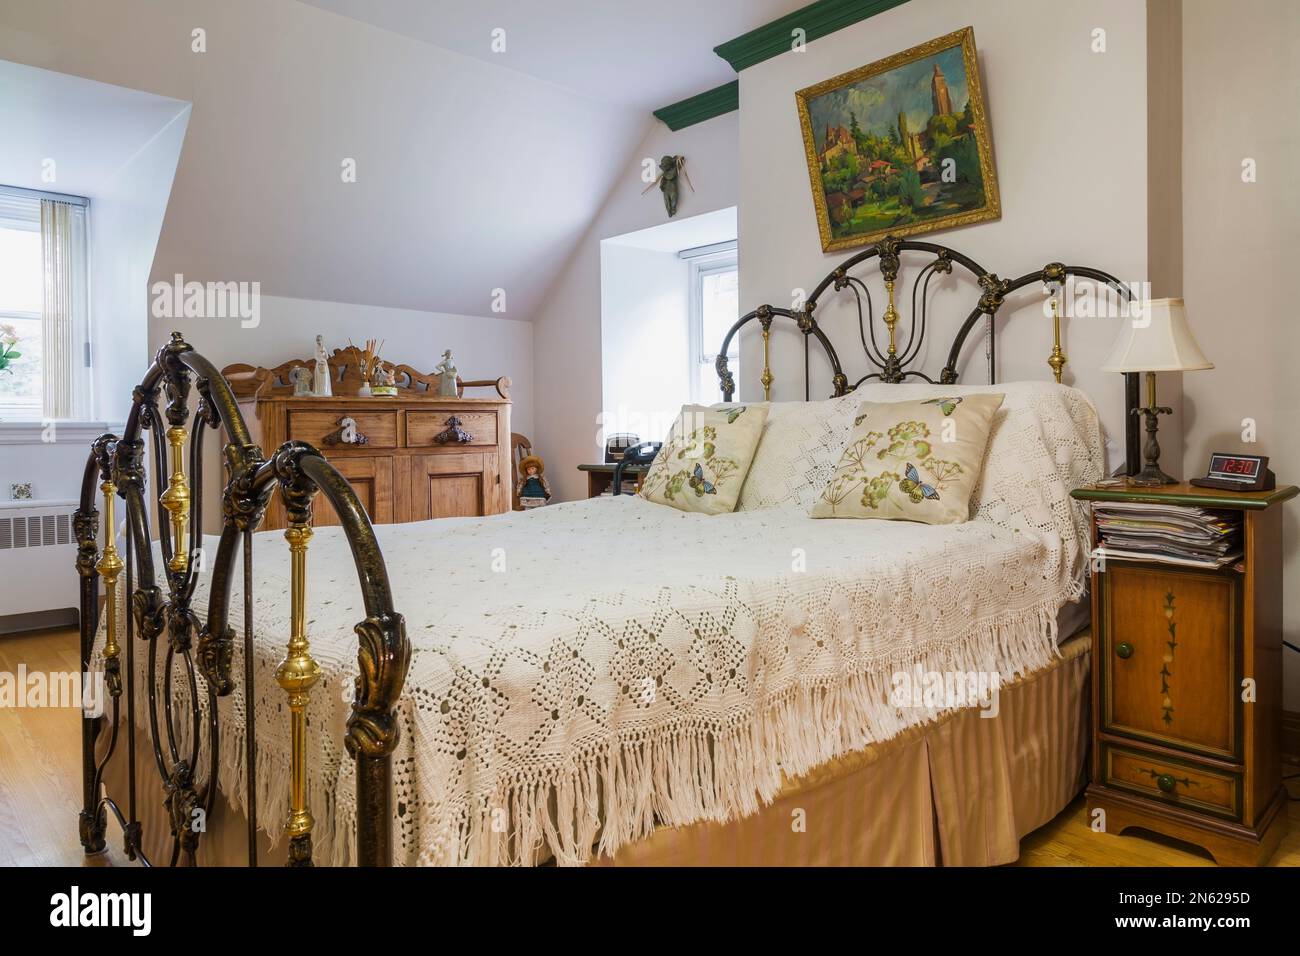 Cuscini sul letto matrimoniale accanto al comodino, decorazioni e pittura  sopra in una camera da letto interno Foto stock - Alamy